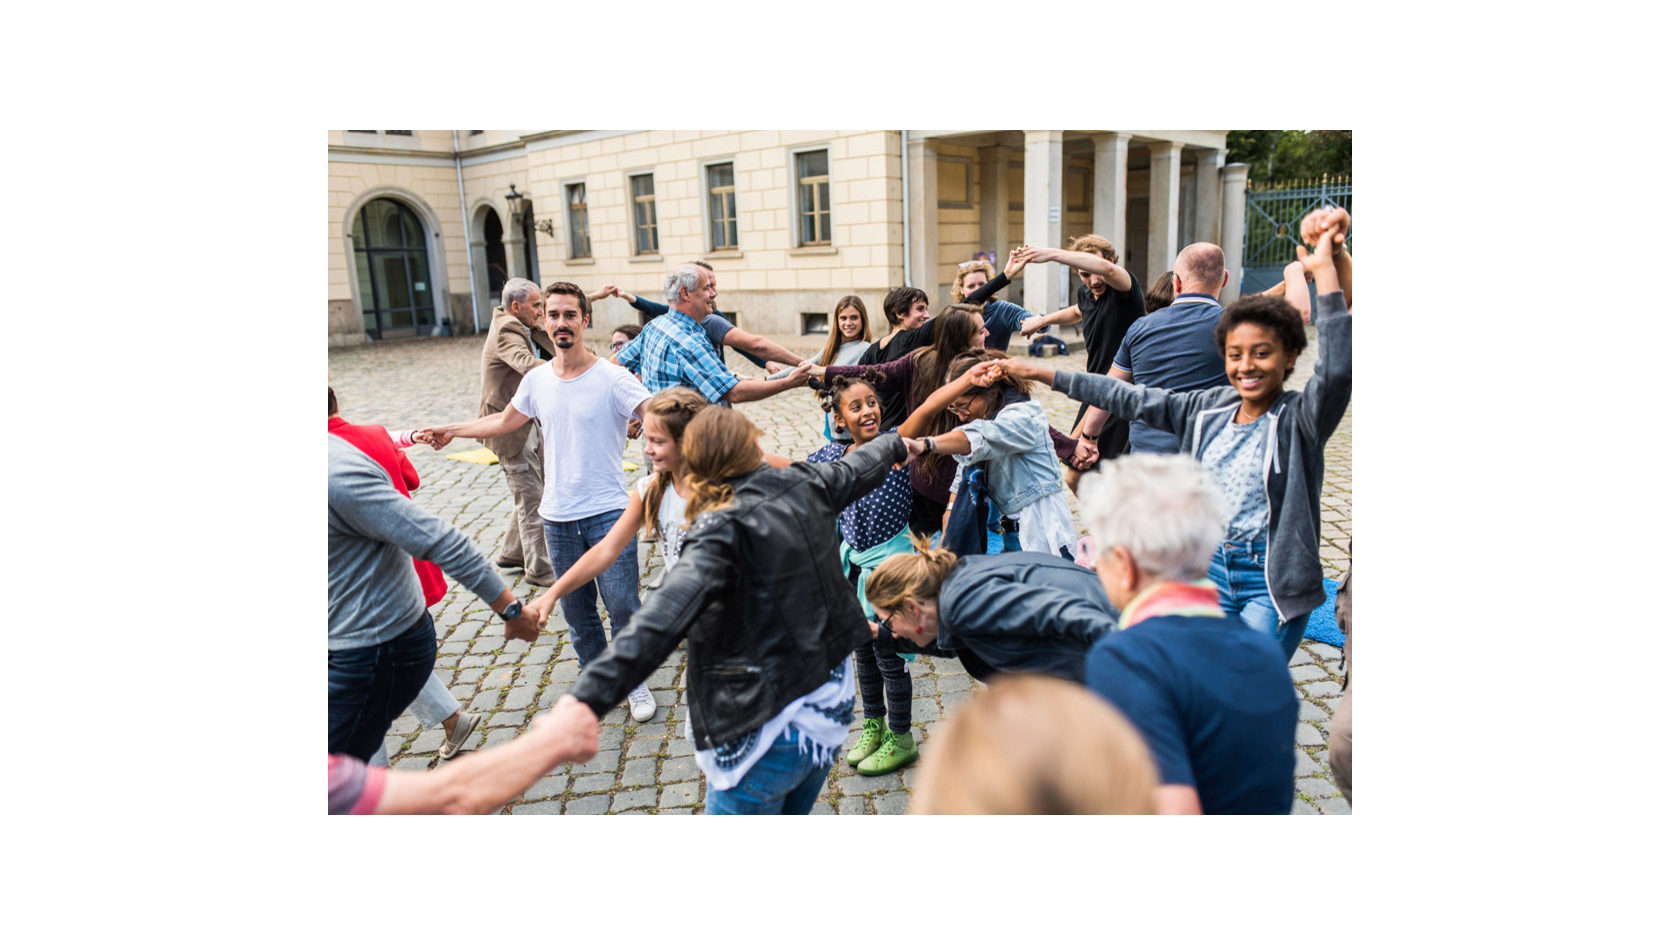 Bei den Orten des Miteinanders sind zahlreiche junge Menschen bei Schloss Albrechtsberg sich an den Händen fassend in mehreren Reihen ineinander verschlungen.